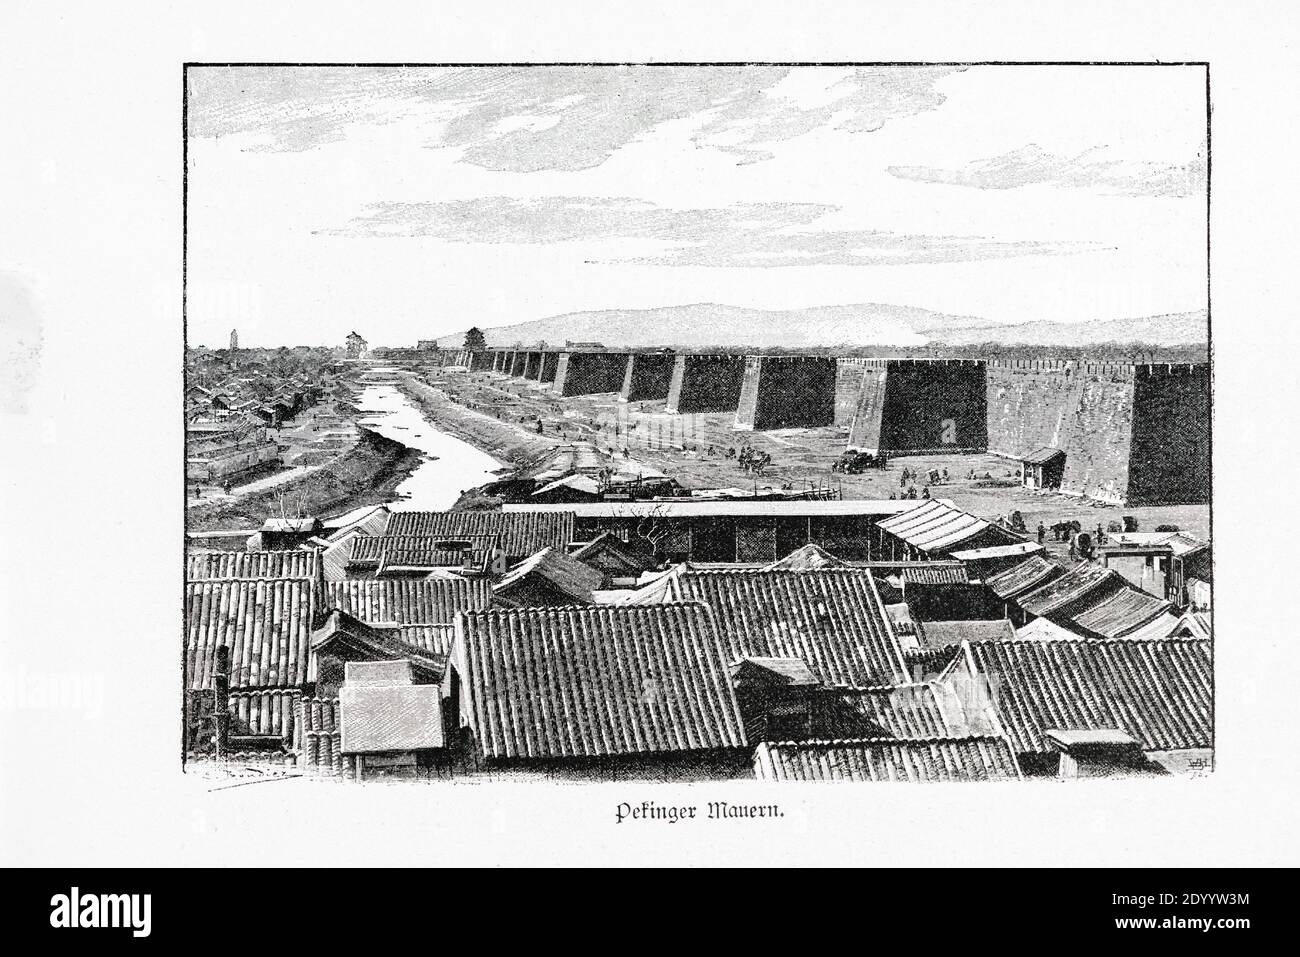 Titolo 'Pekinger Mauern' o 'Peking Walls' paesaggio con pareti spesse, una città e un fiume, Ilustrazione da 'Die Haupstädte der Welt', Breslau circa 1897 Foto Stock